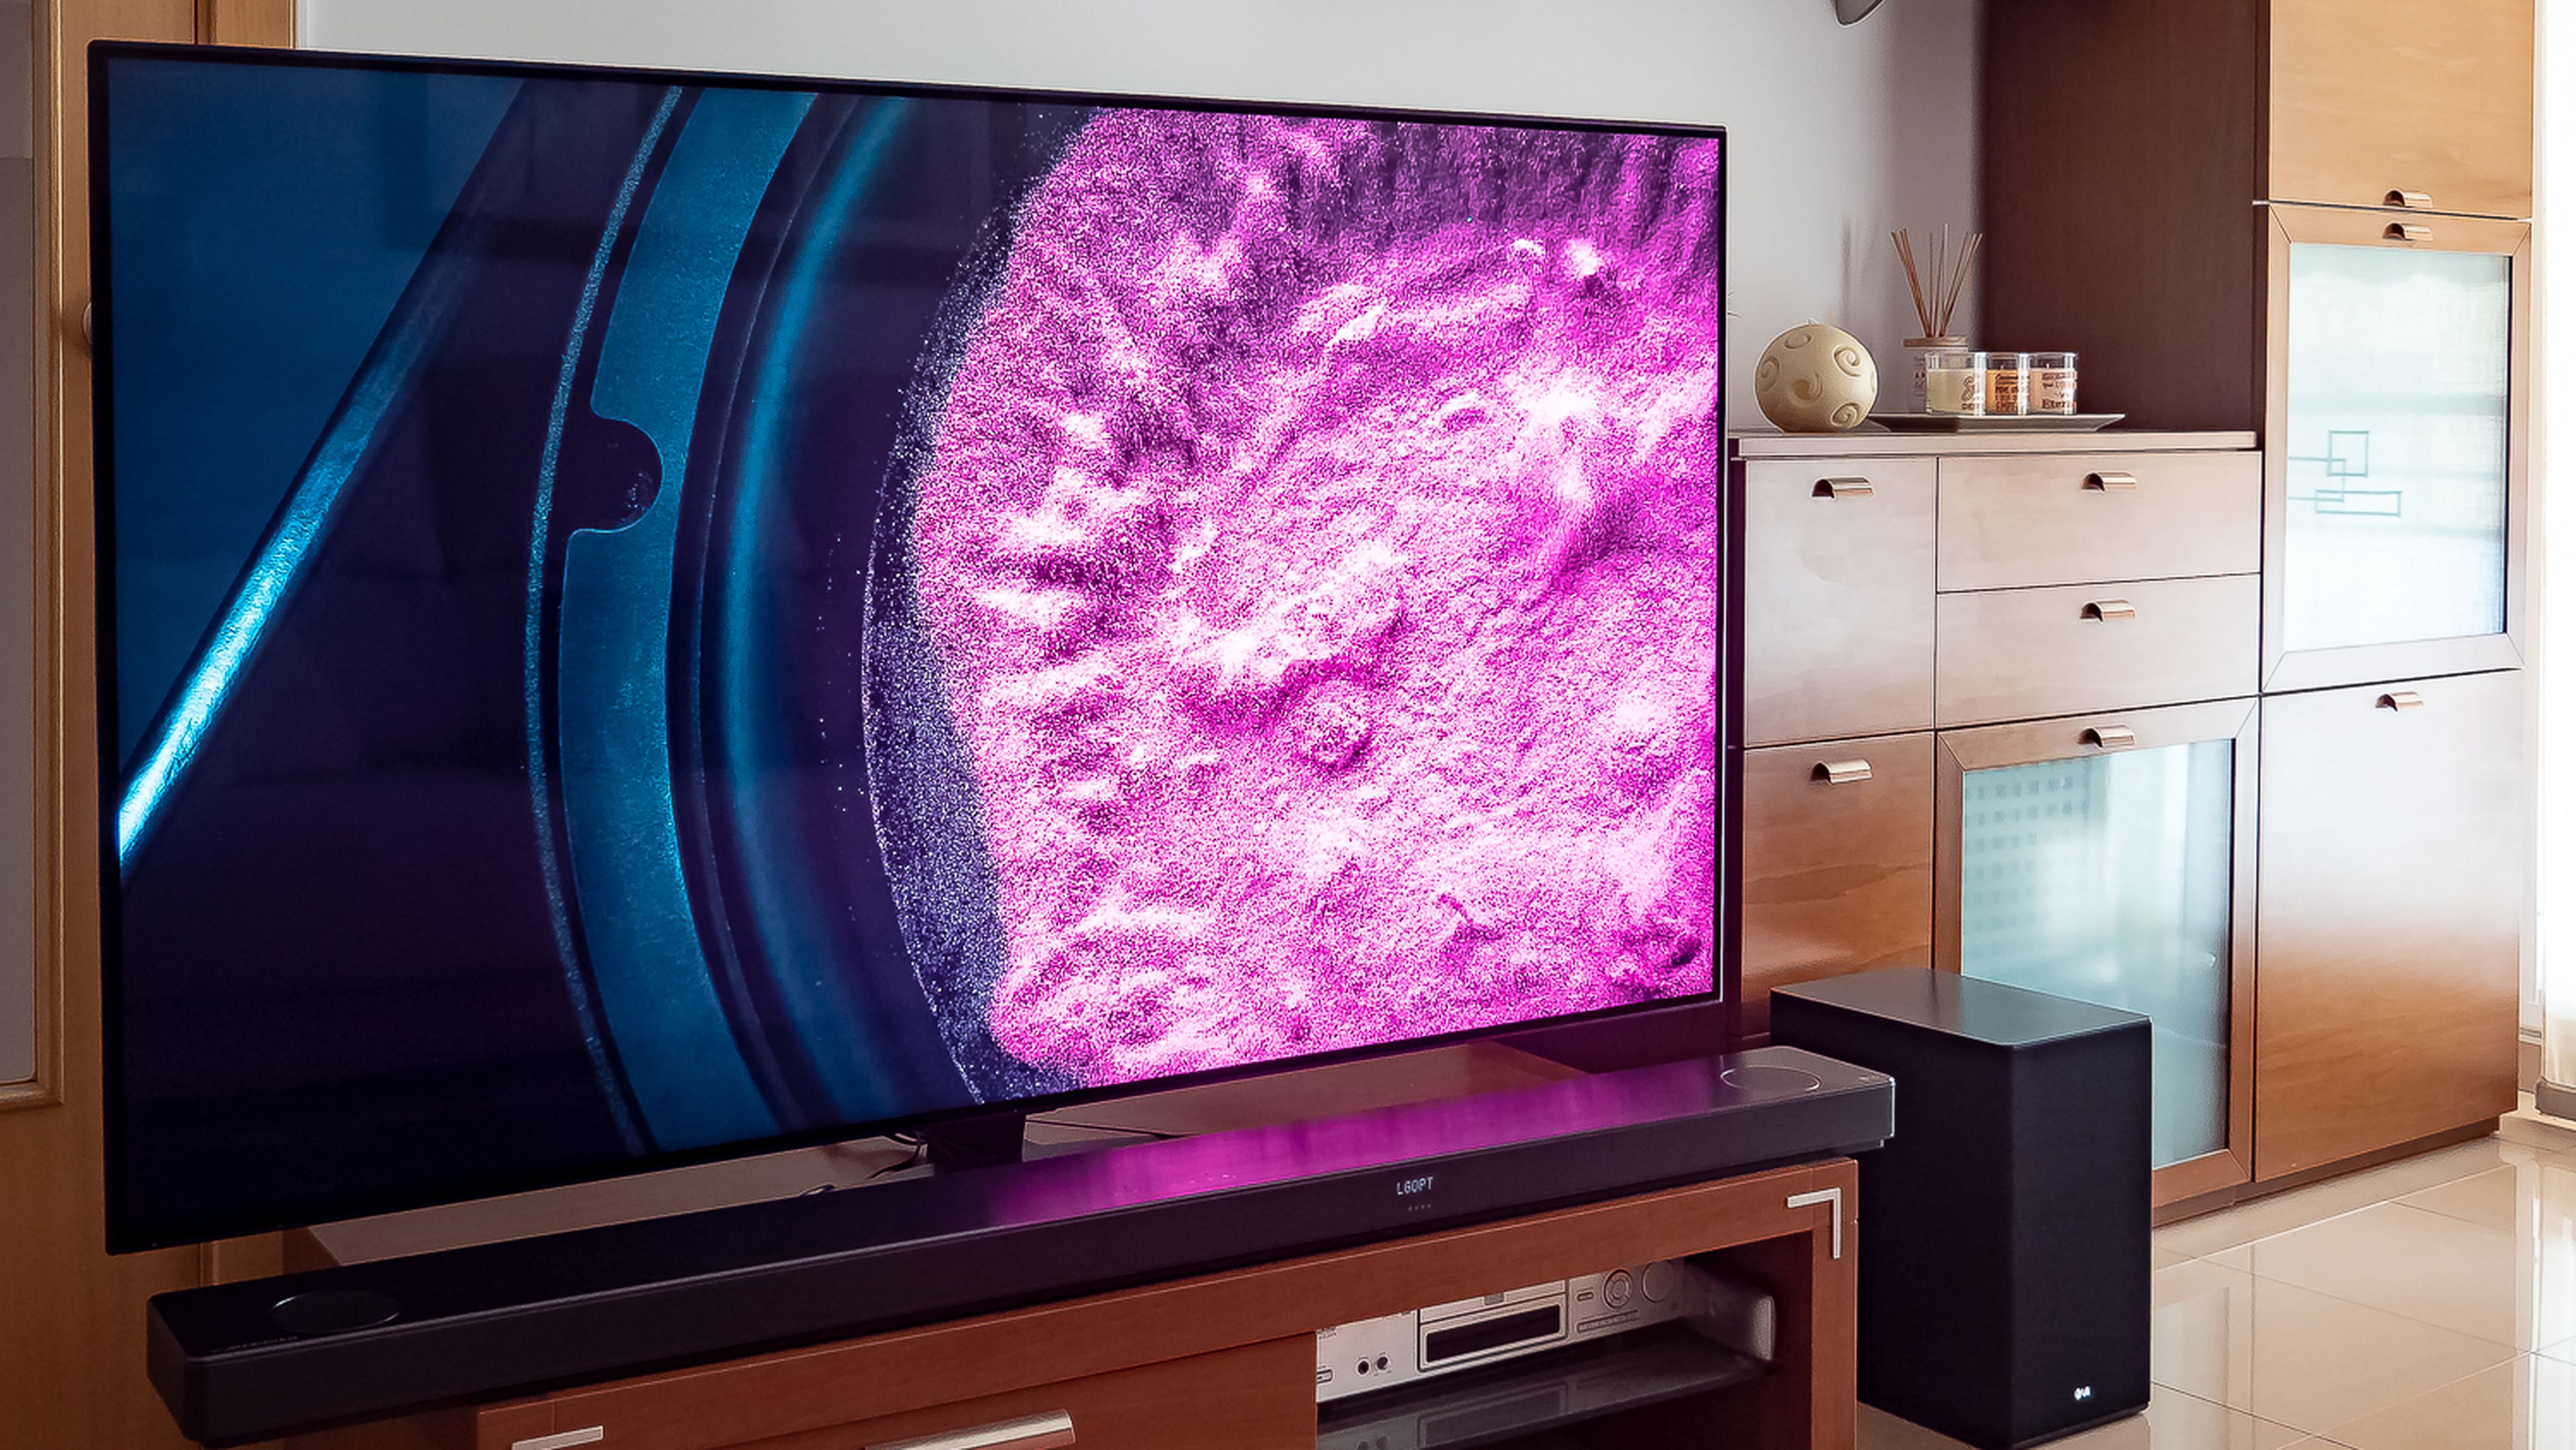 Esta smart TV NanoCell de LG tiene 65 pulgadas y ahora está